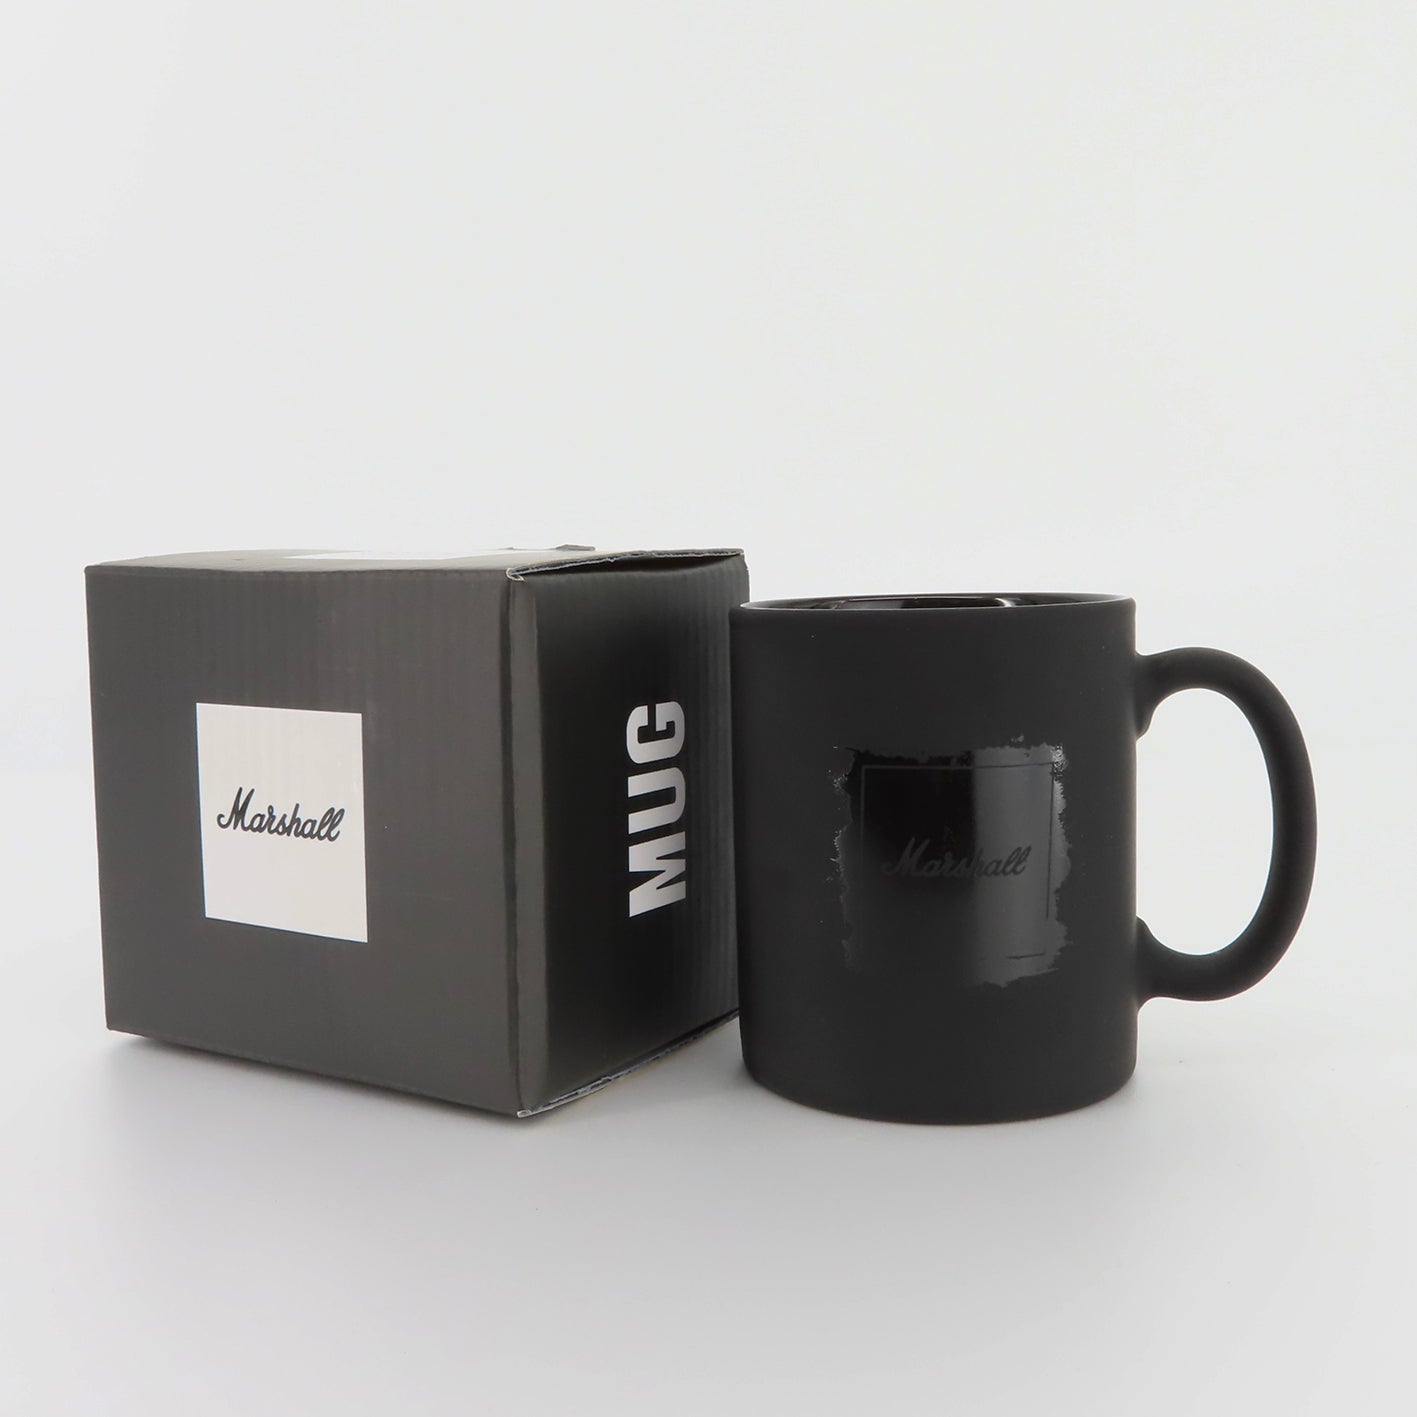 10oz Straight Coffee Mug with Handle – Marshall Made Tumblers